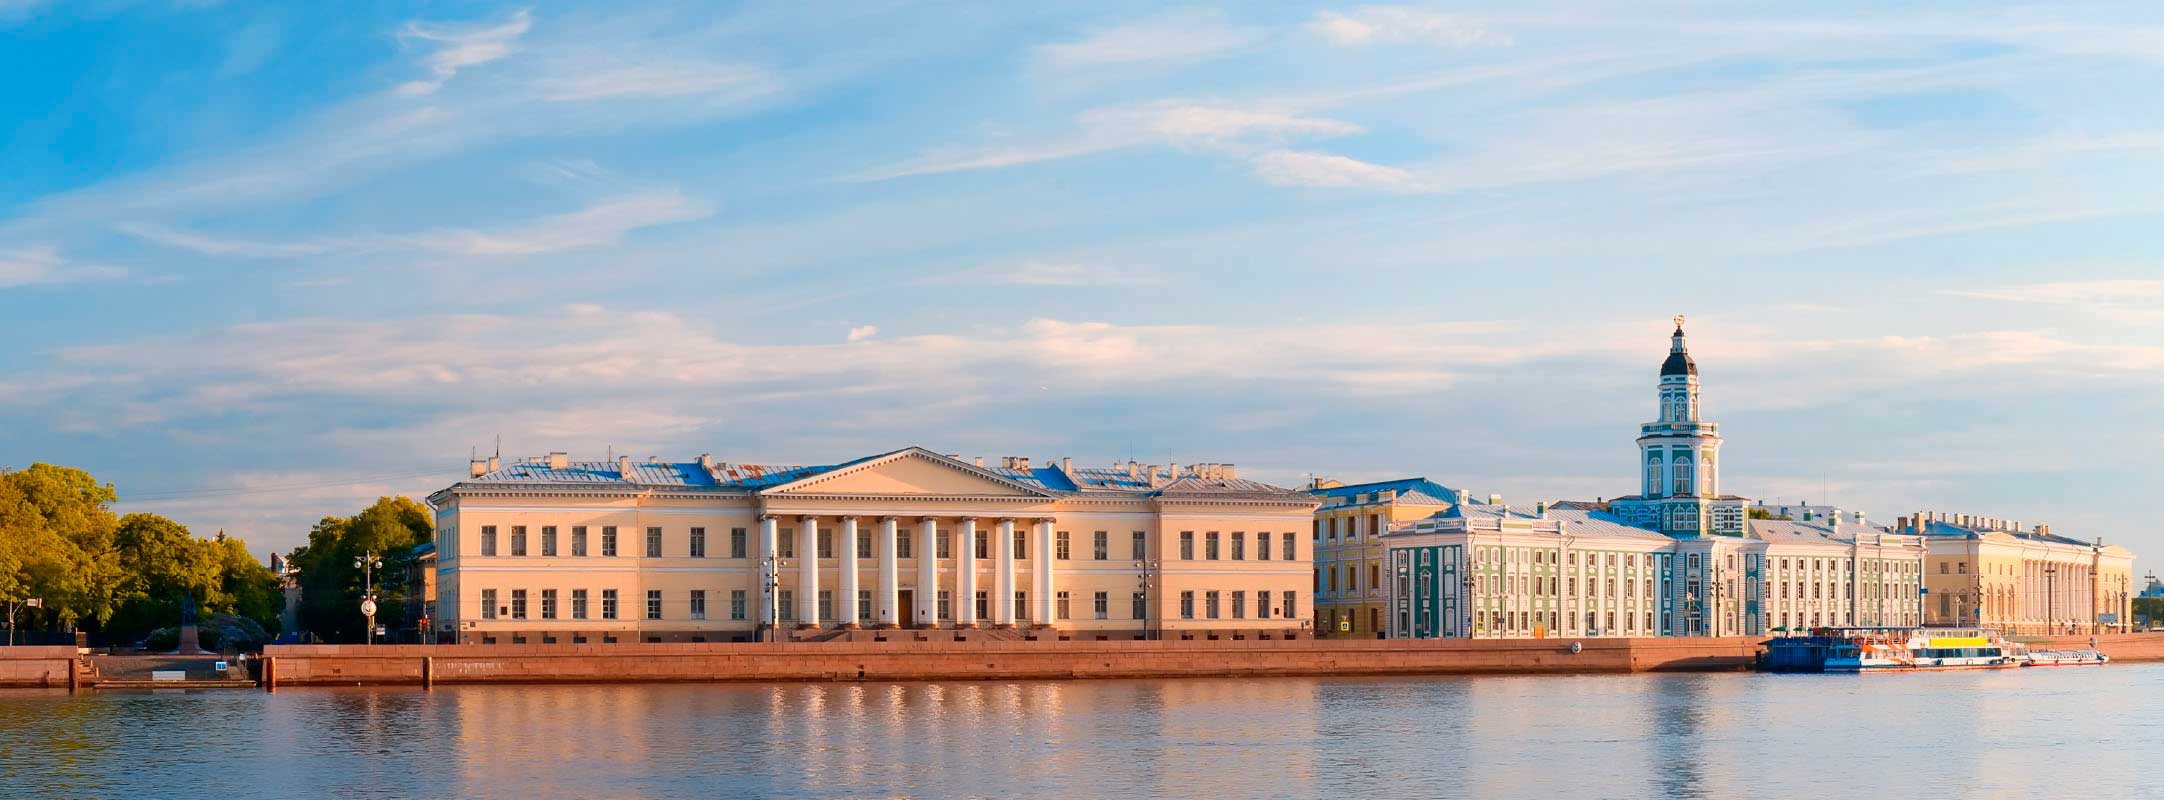 Старая Ладога и Санкт-Петербург